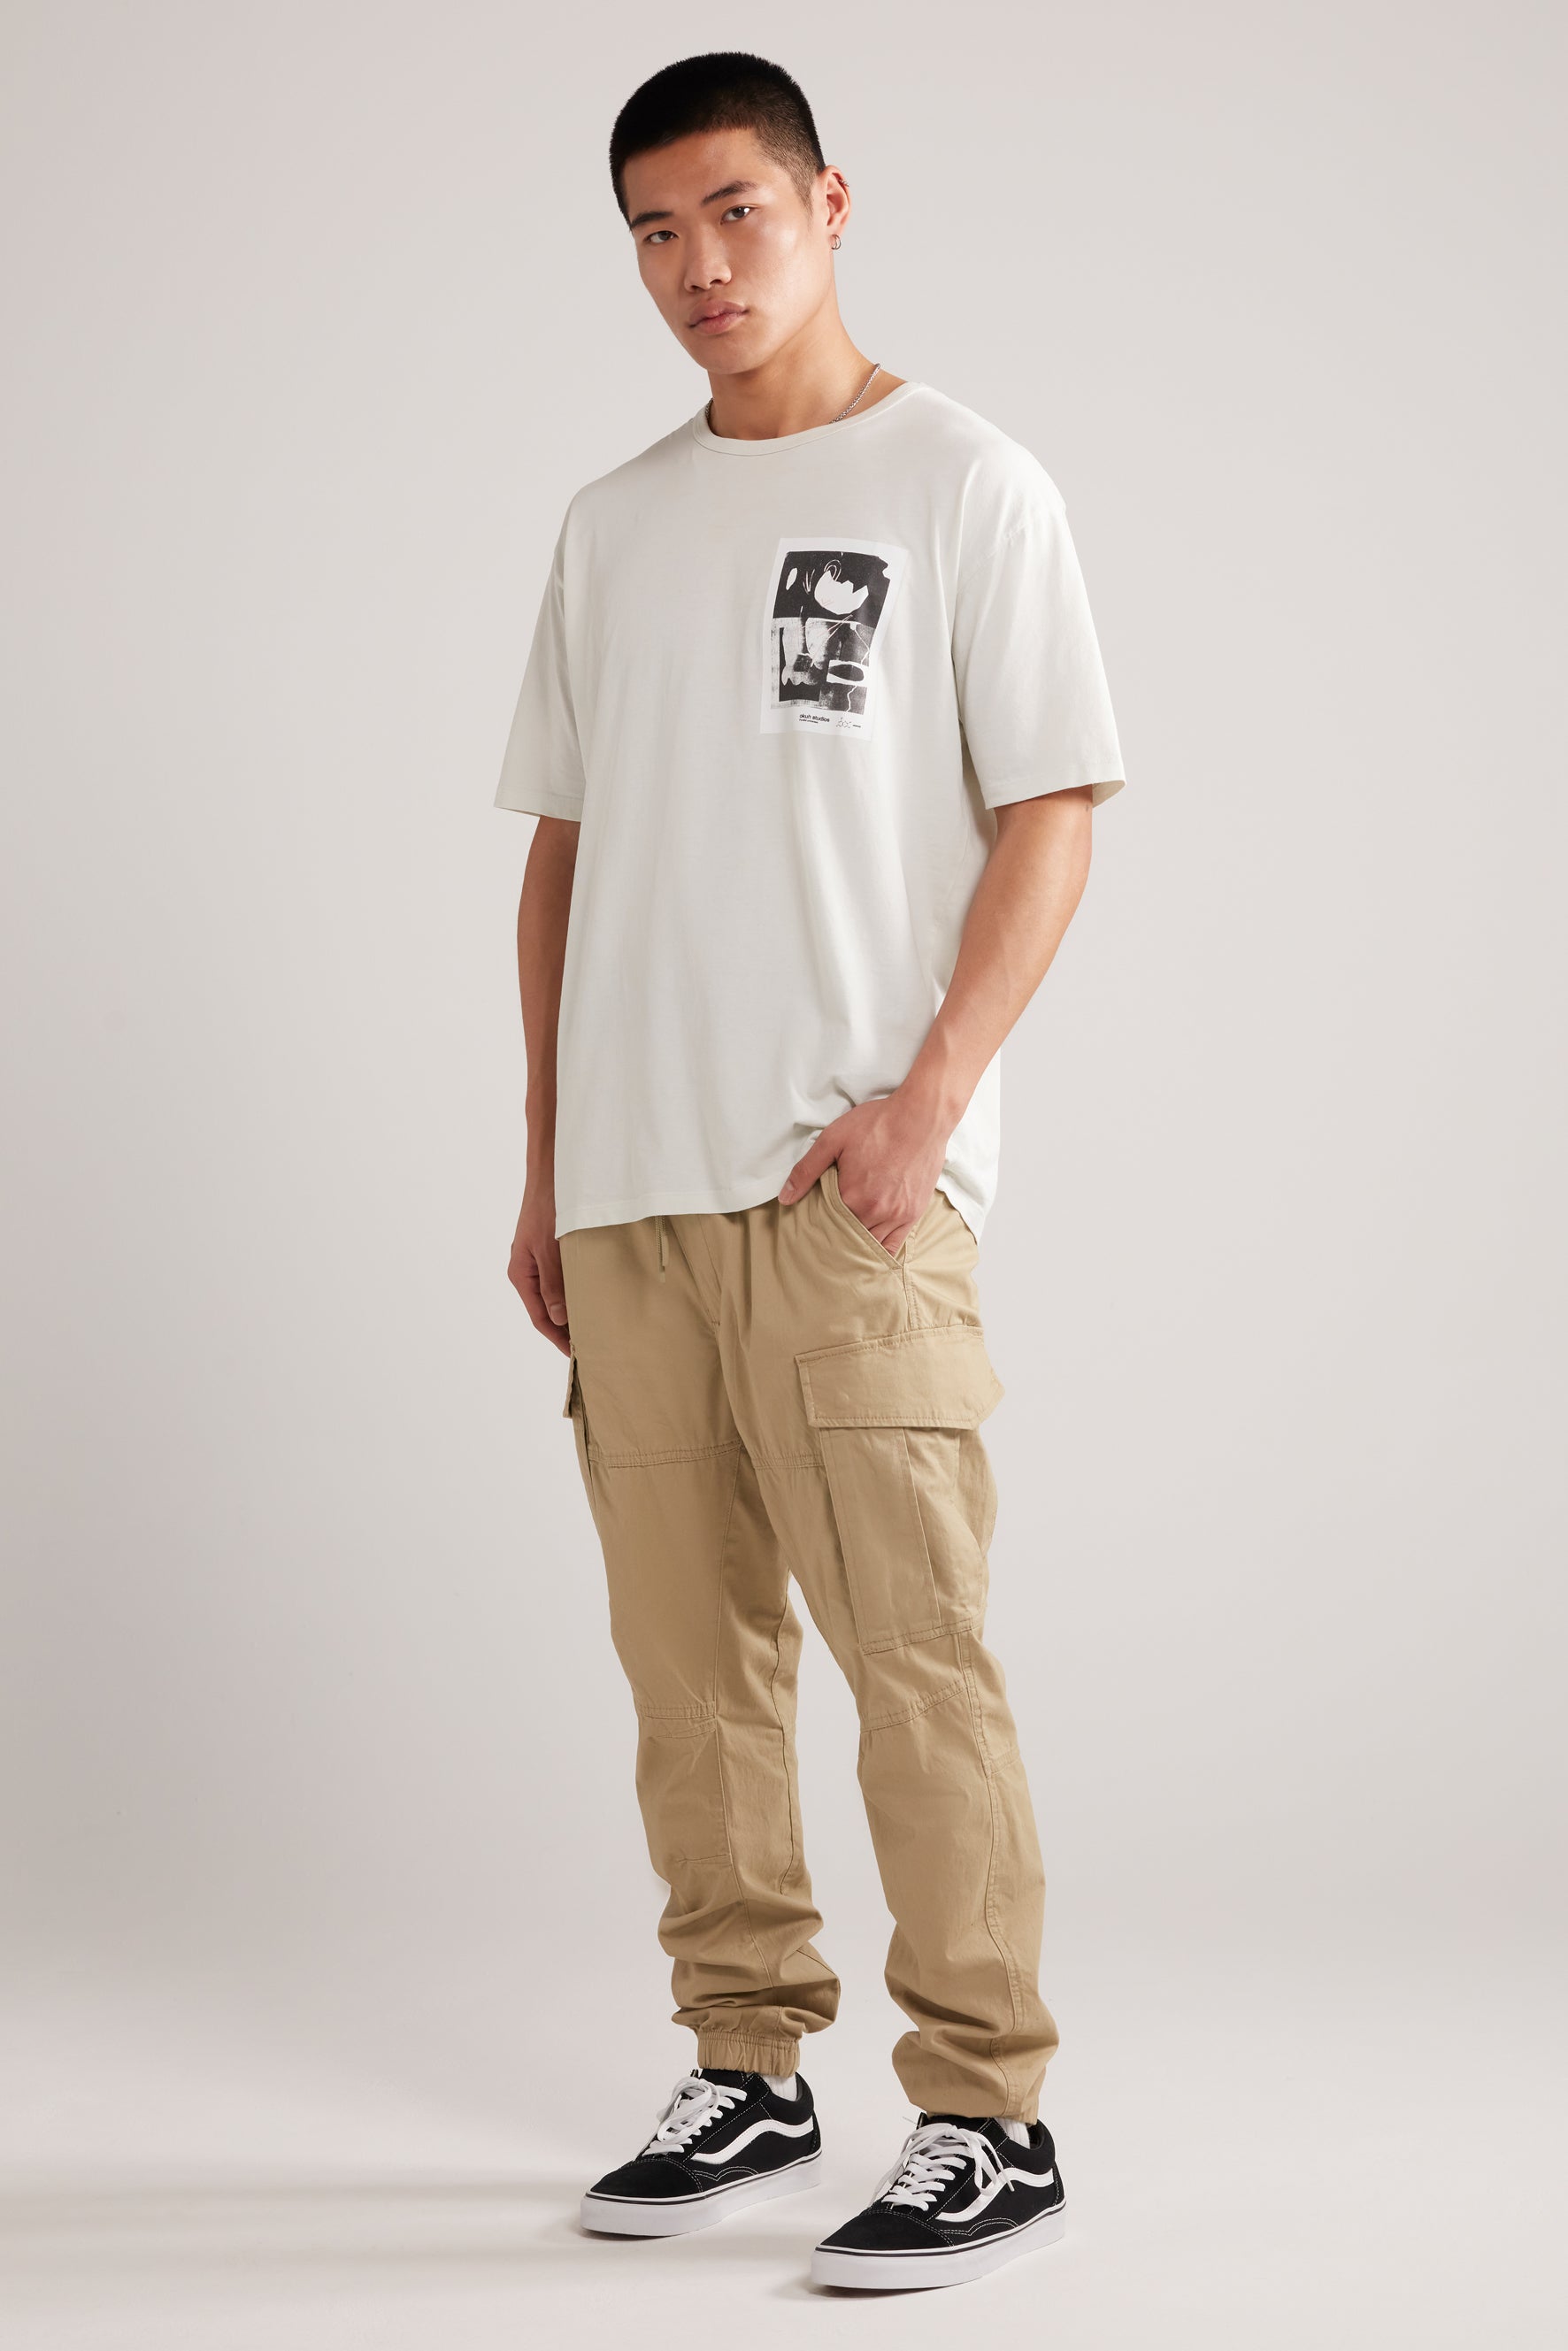 Atoka - Ivory T-Shirt